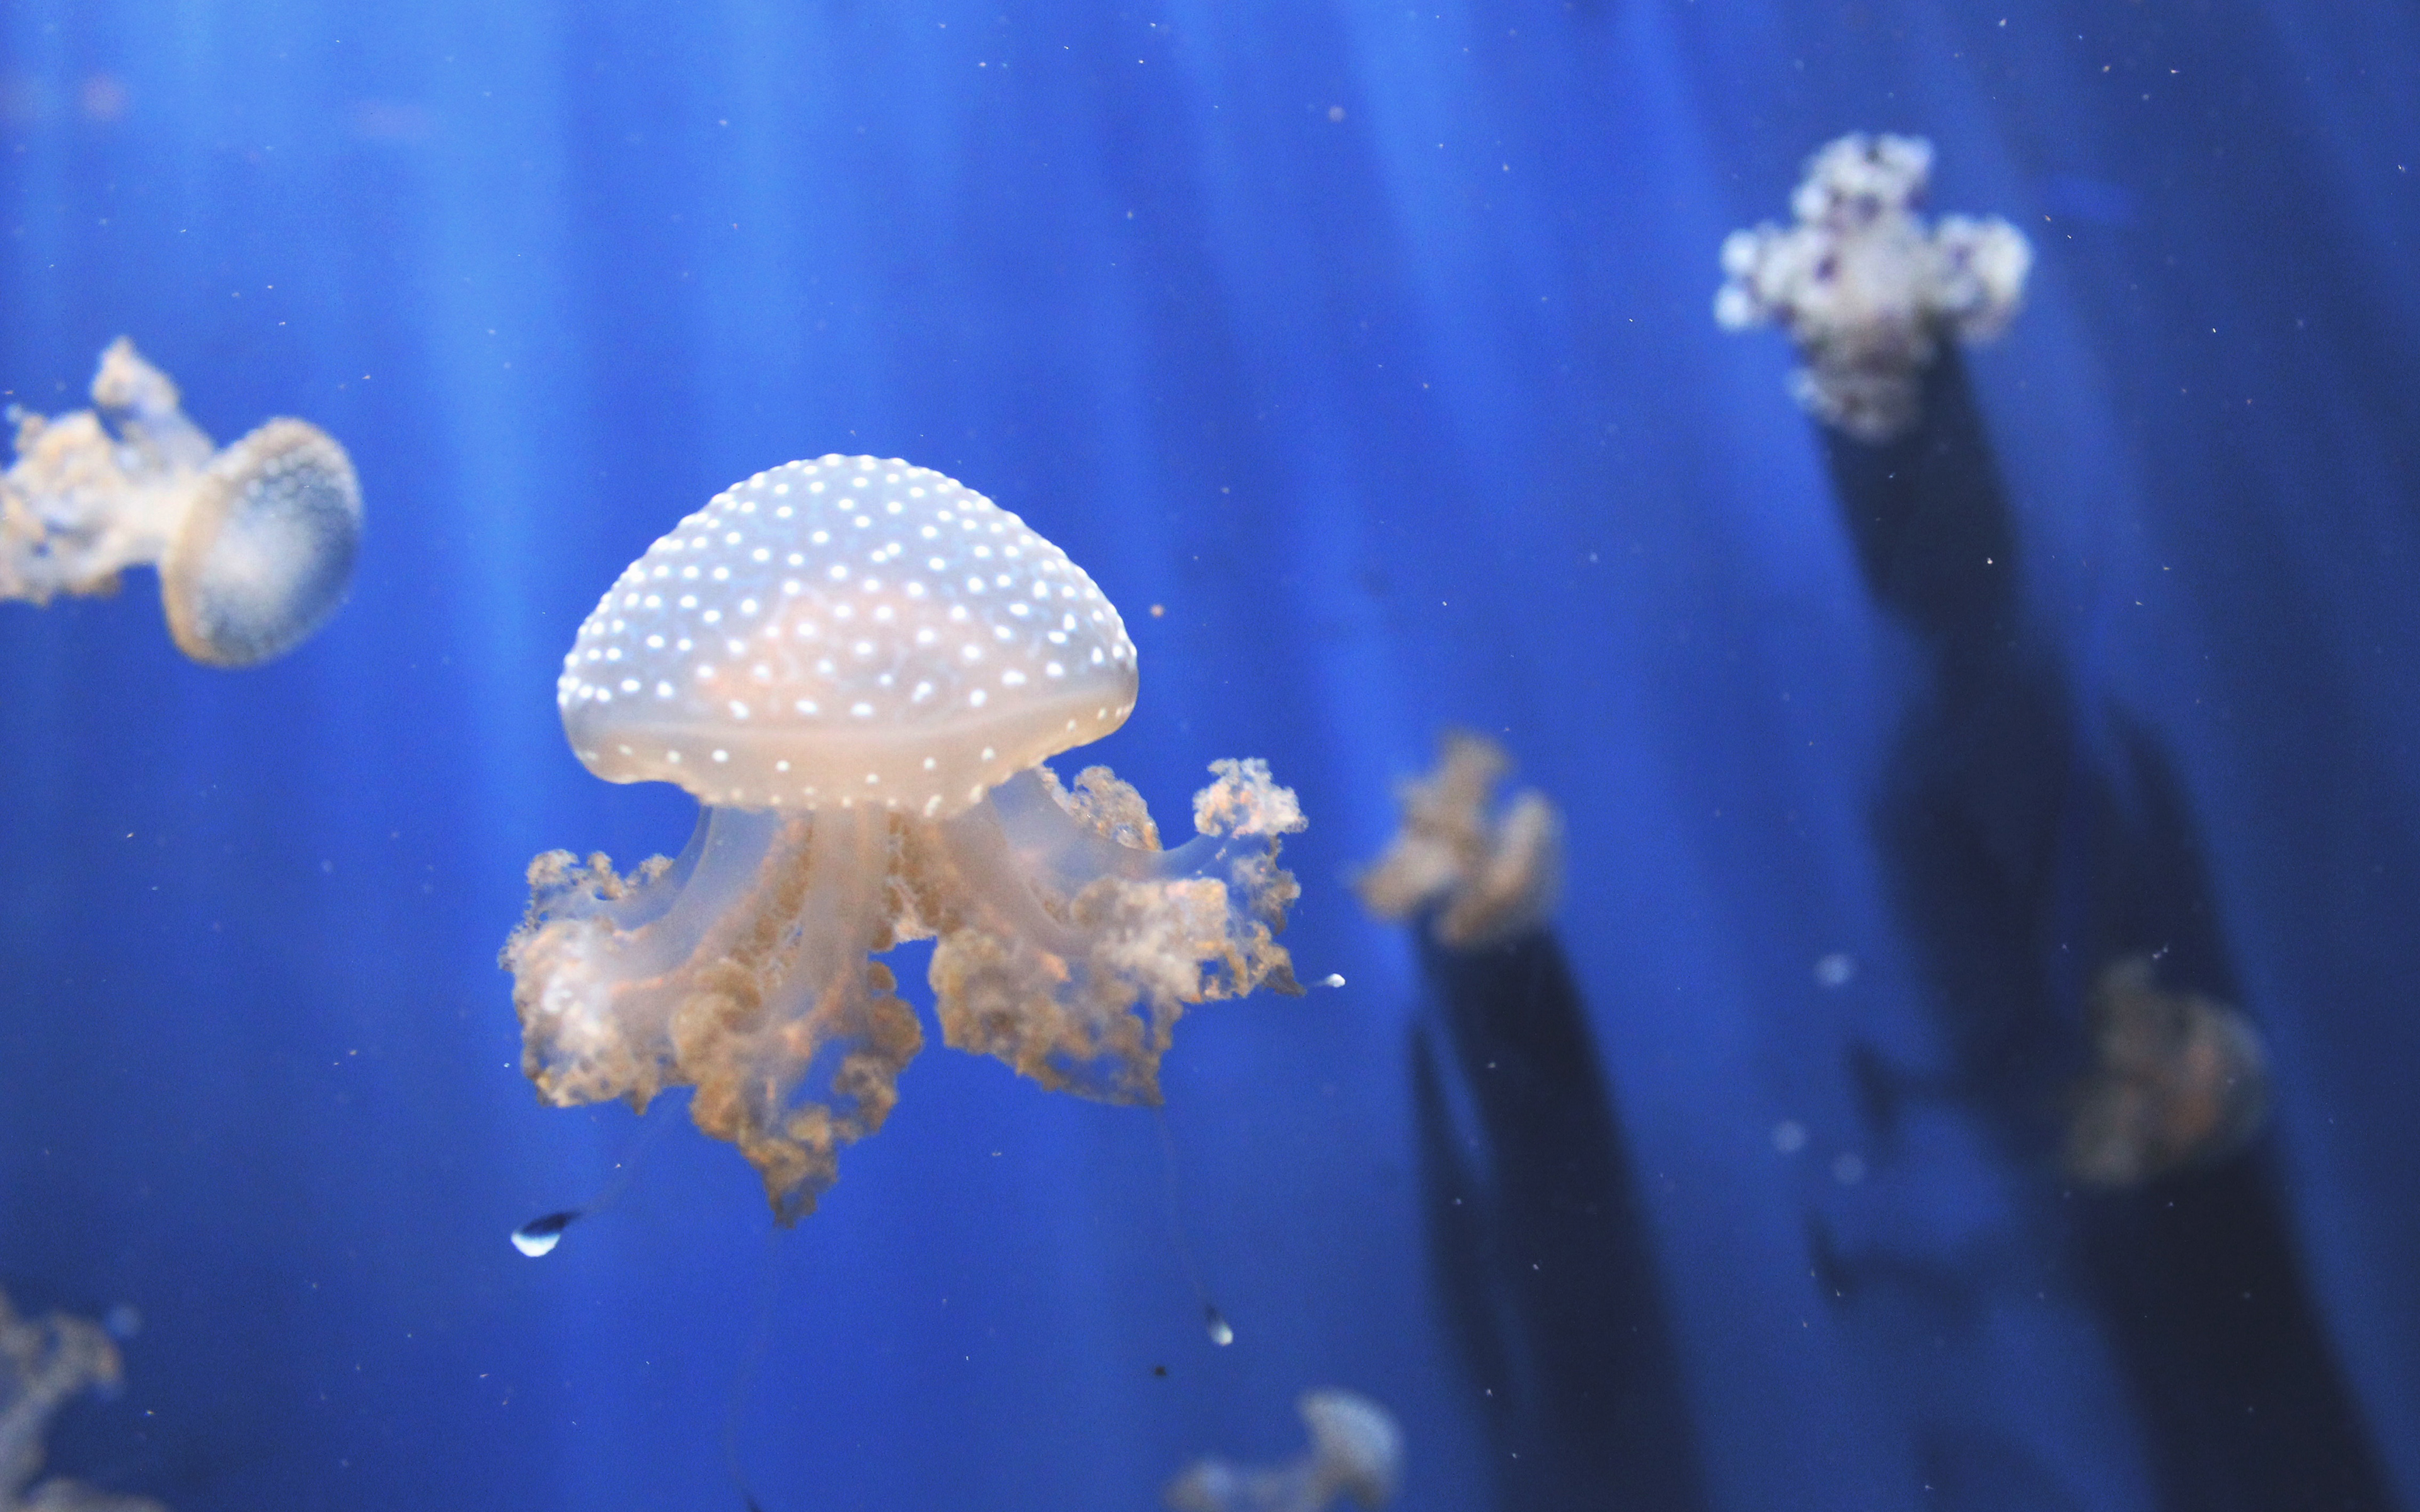 Jellyfishes Aquarium 4K